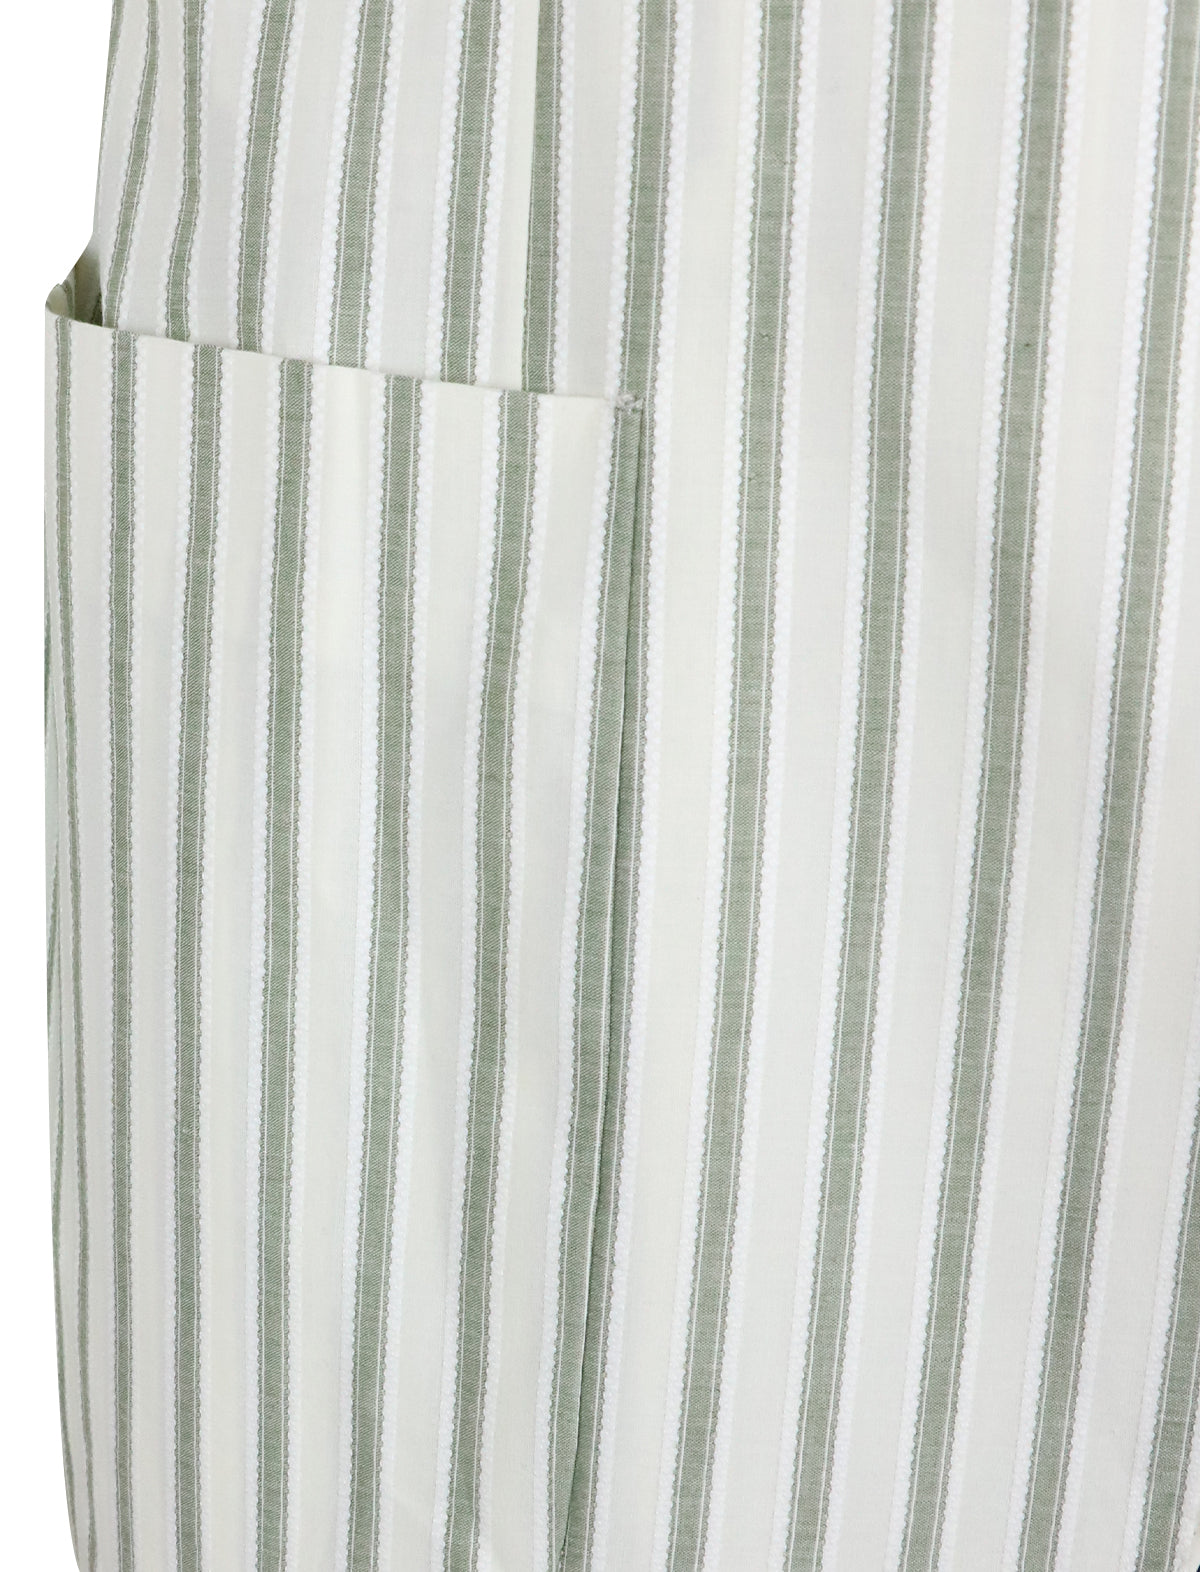 CARUSO Ponza Blazer in White/Green Stripes